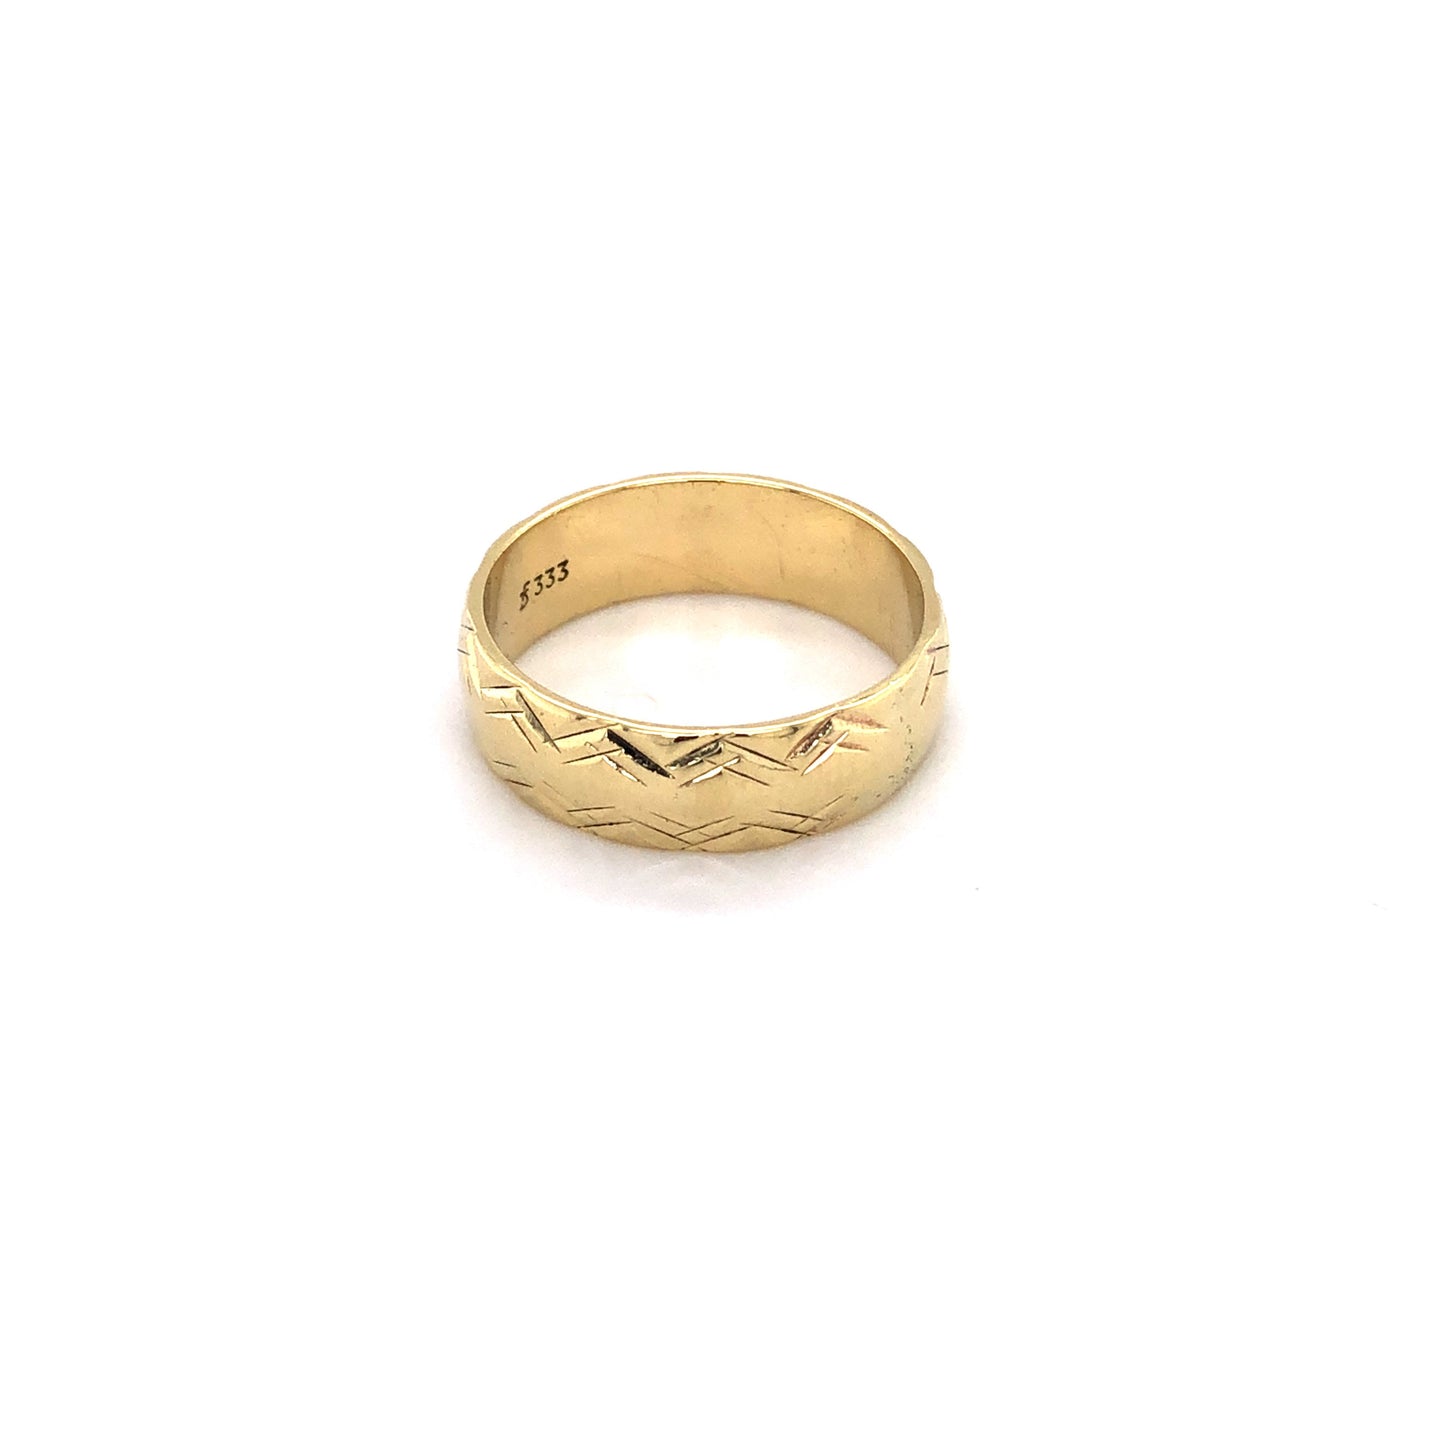 Ring Gold 333 / 8k Gr. 55, gemustert Nr. 3385